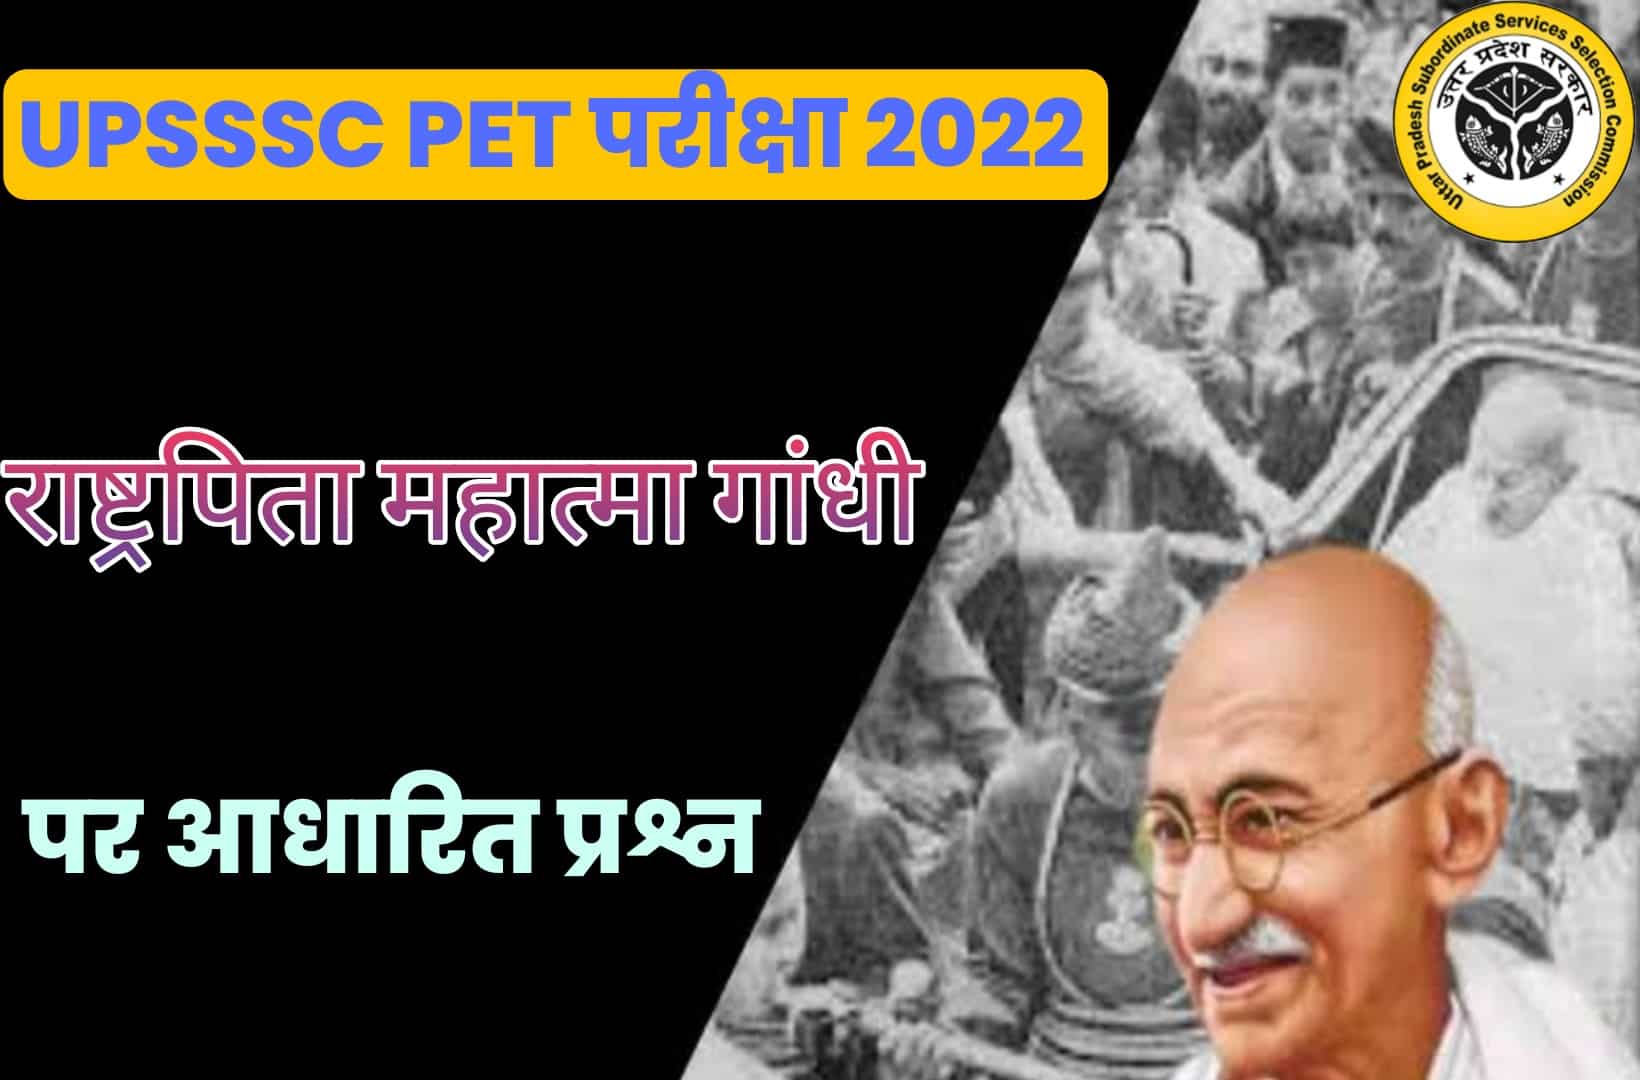 UPSSSC PET Exam 2022 MCQ | परीक्षा से पहले एक बार जरूर पढ़ें गांधी जयन्ती से जुड़ें कुछ सवाल